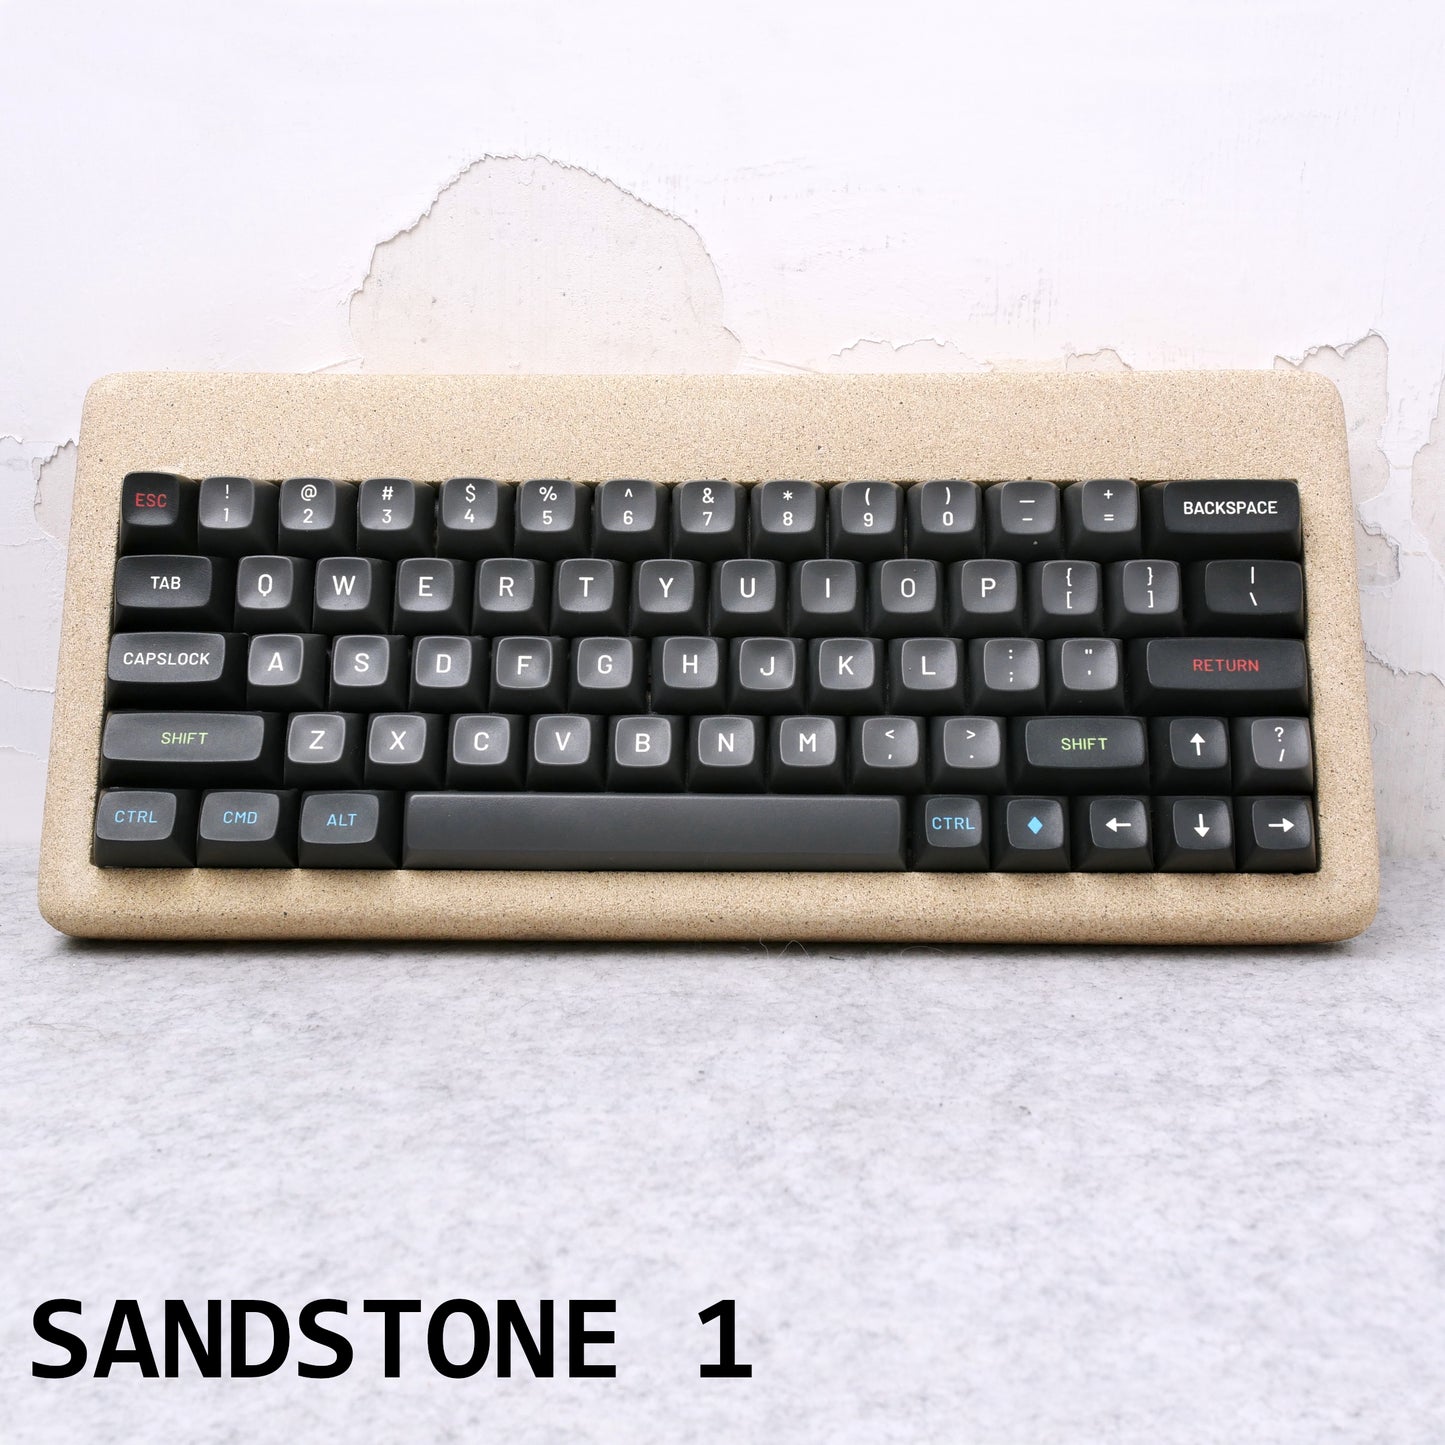 Mason60 Specials- Sandstone Zen